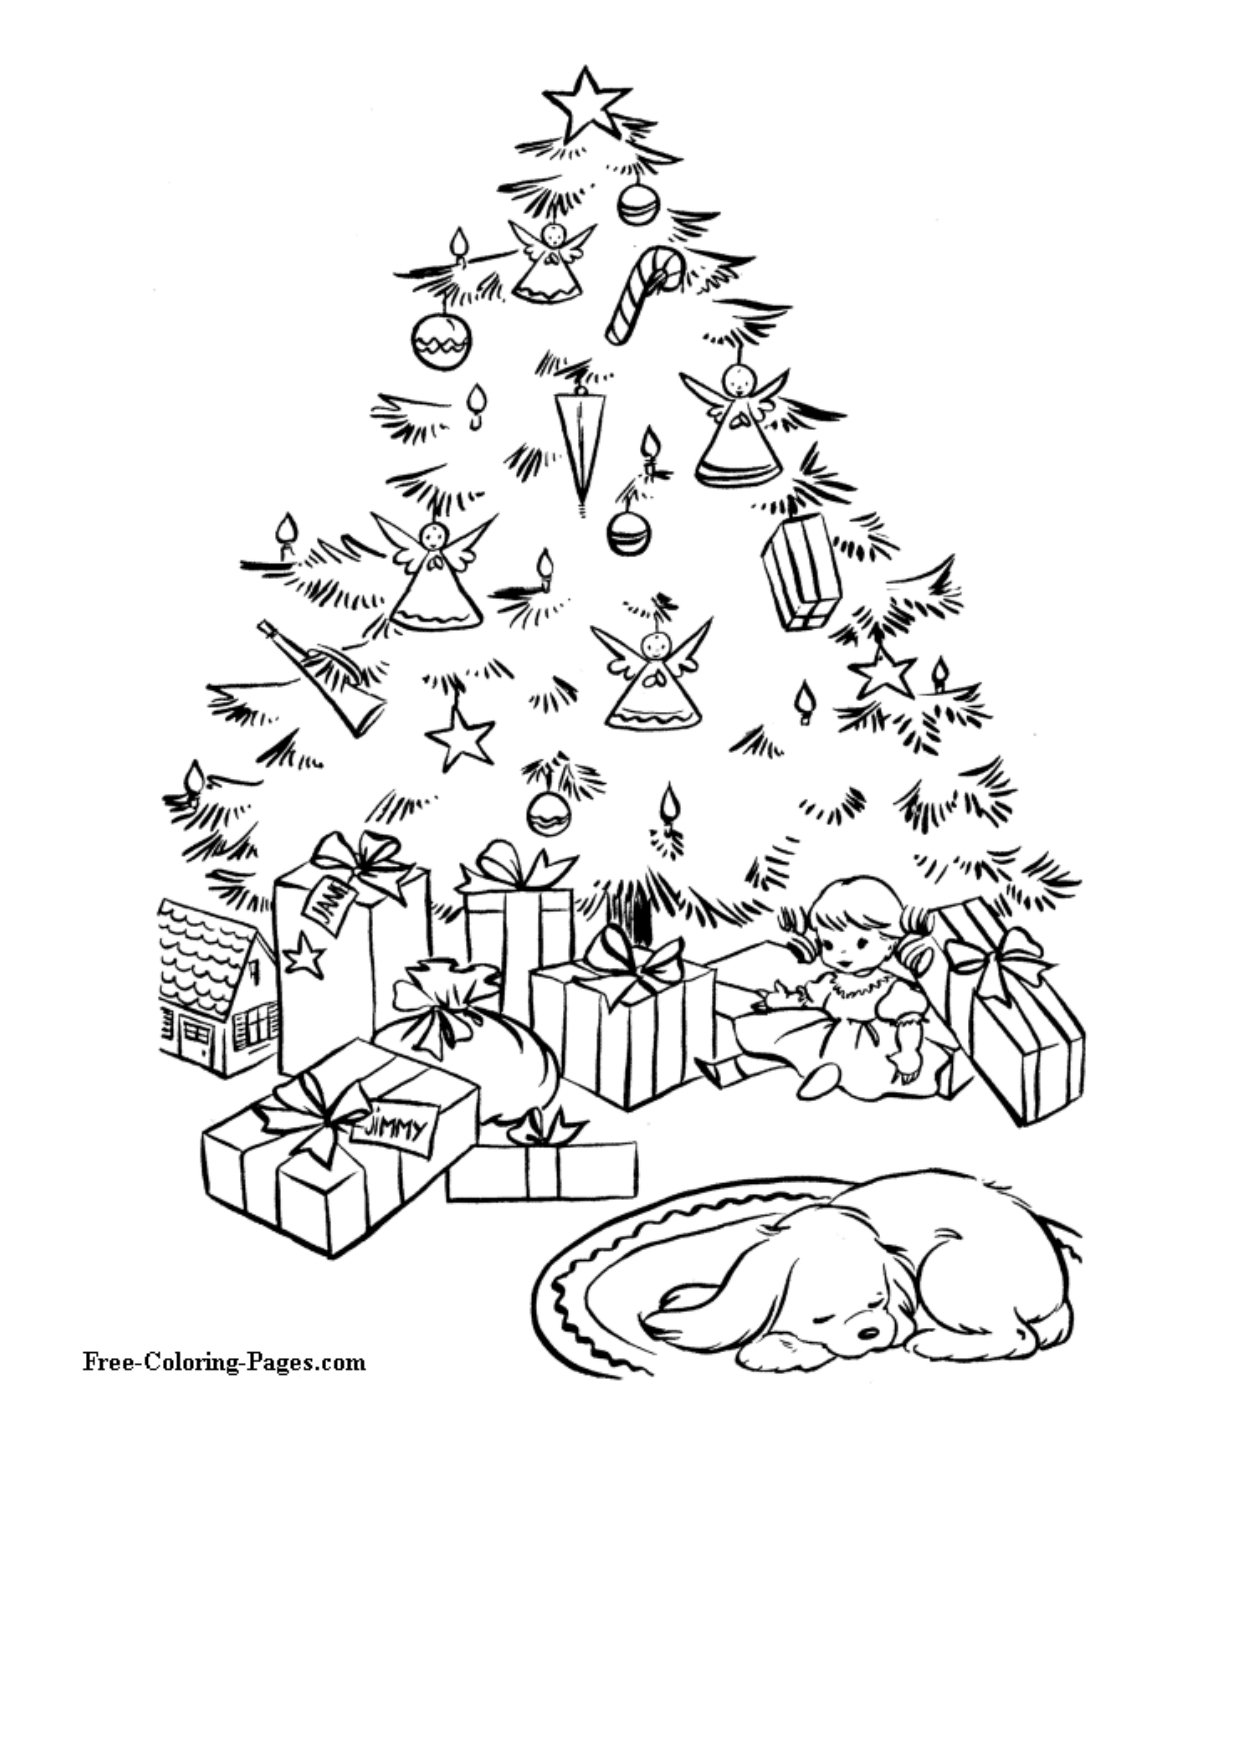 Dibujos de Navidad para Colorear e Imprimir: 9 ideas originales en PDF